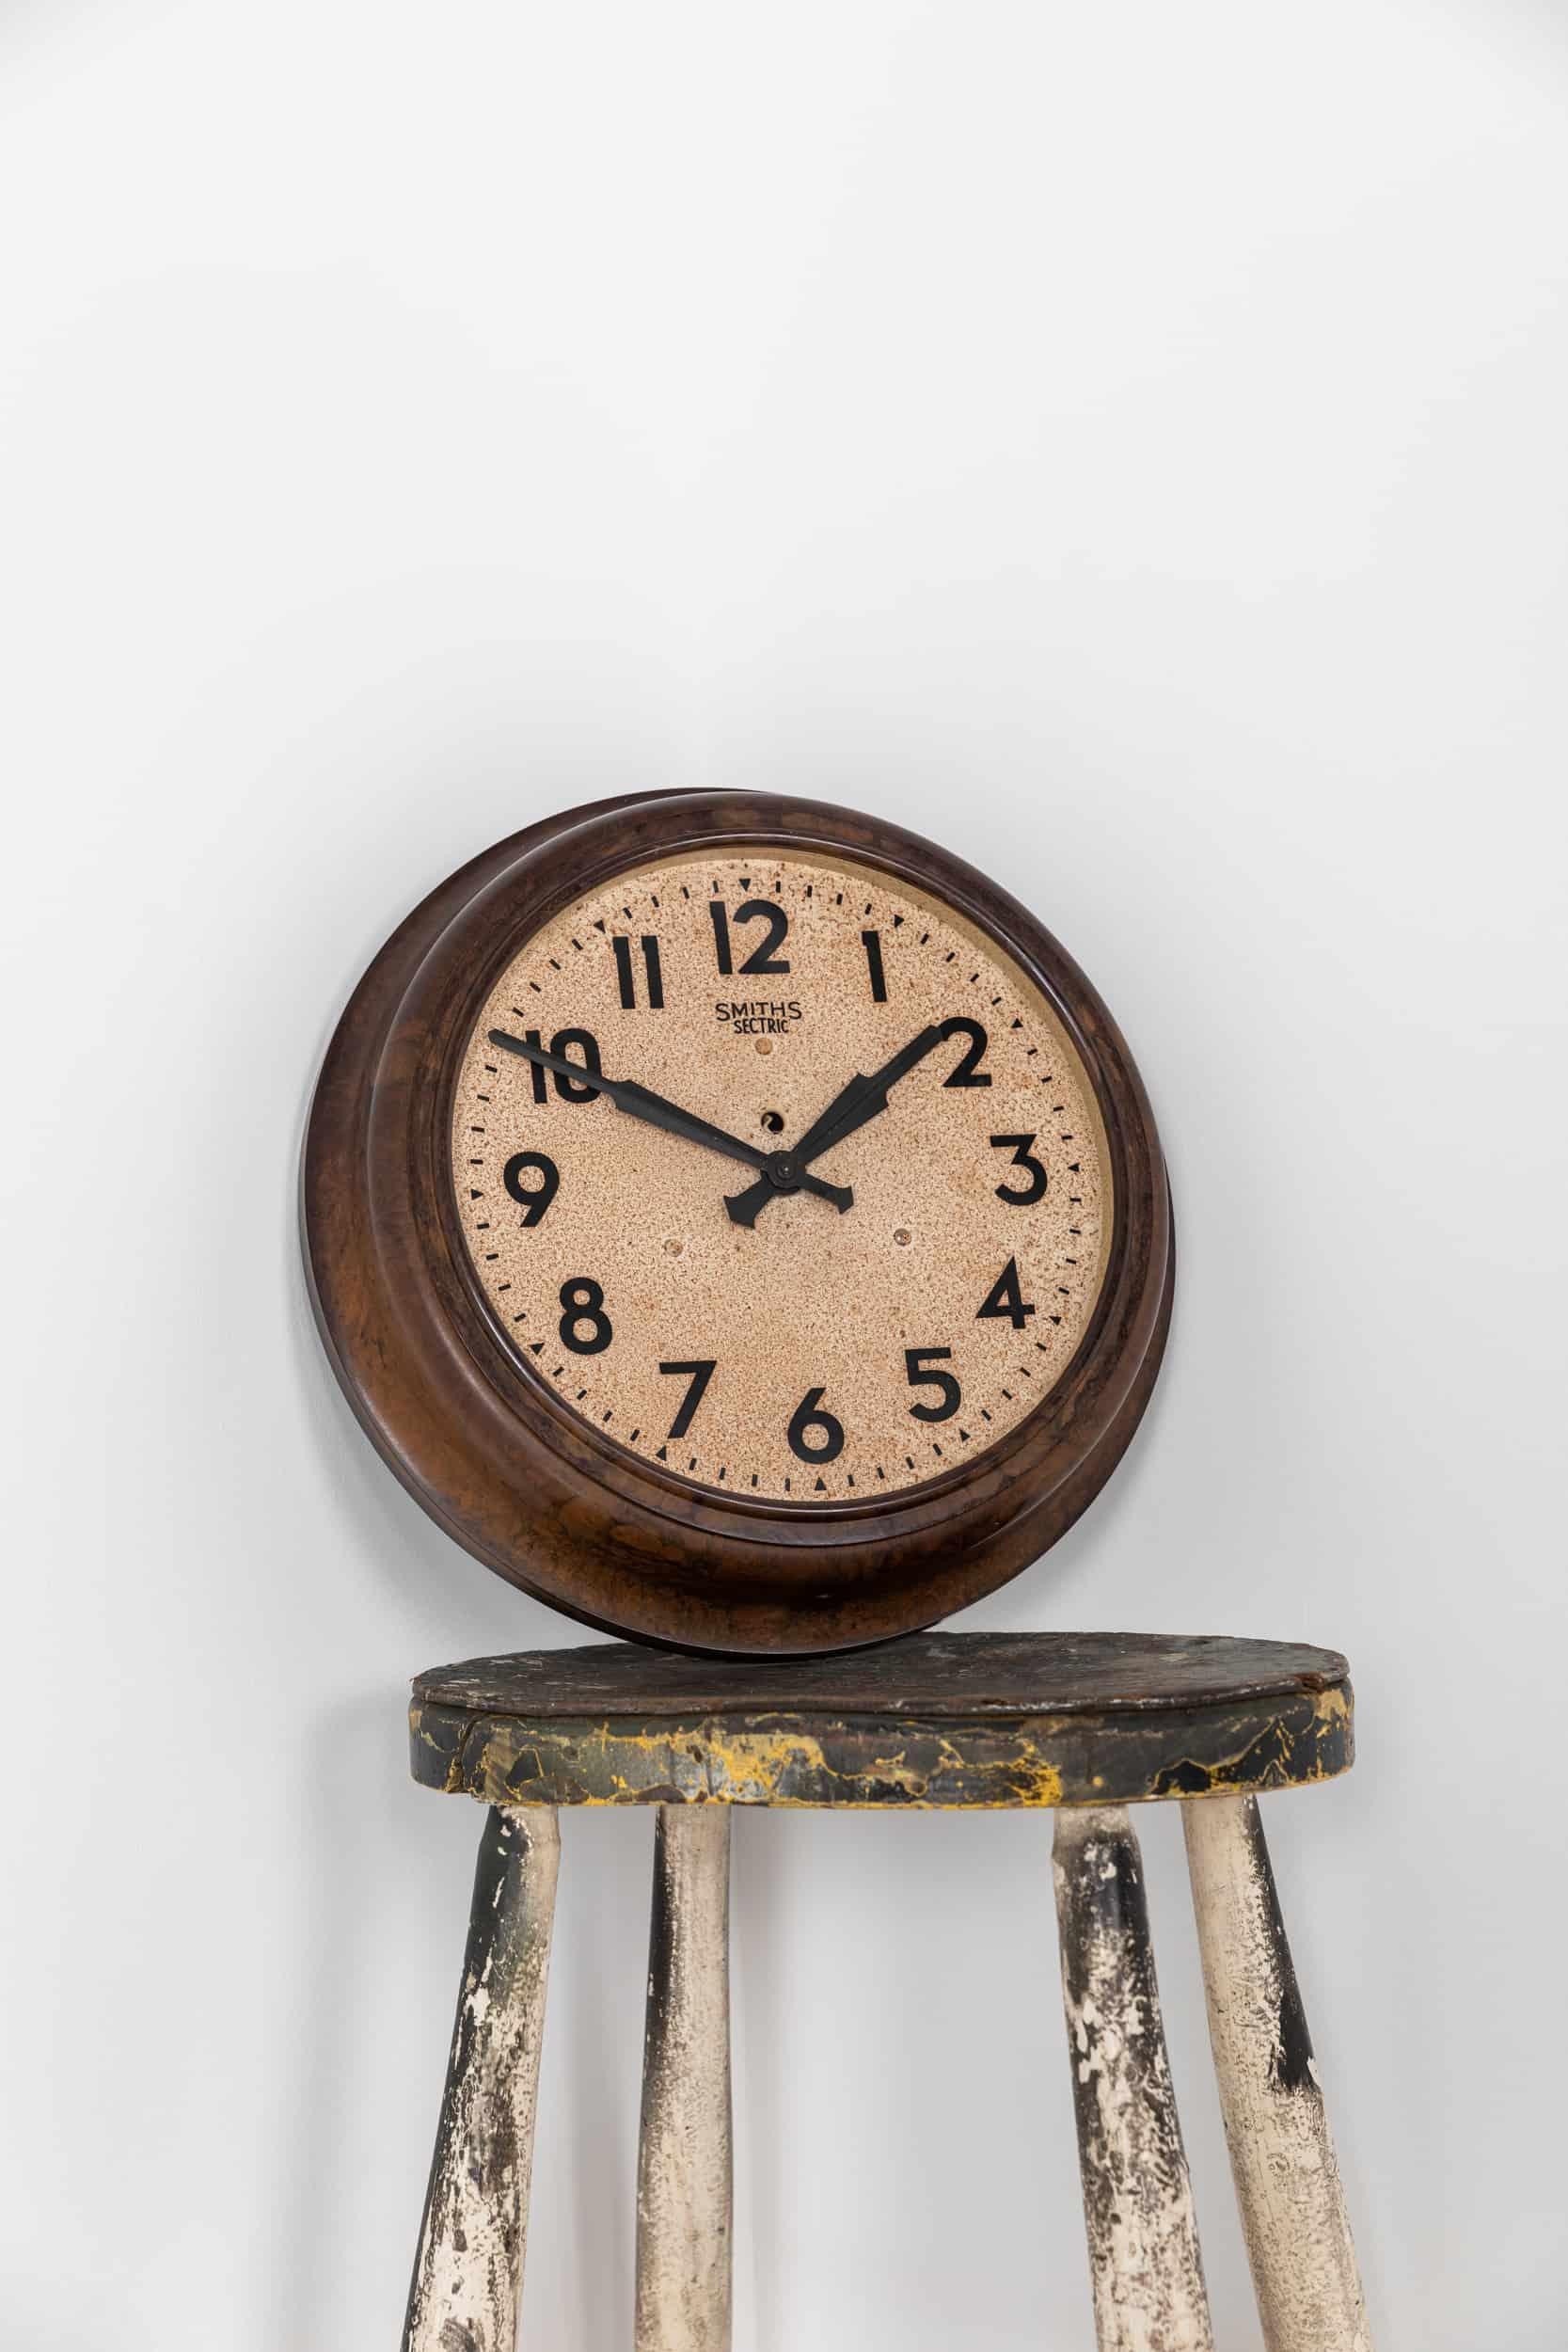 Superbe exemple d'horloge murale industrielle réalisée par Smiths English Clock Systems. Vers 1940.

Une horloge Smiths entièrement originale avec un cadran usé par le temps et un magnifique cadre marbré en bakélite. Smith Sectric branding to face.